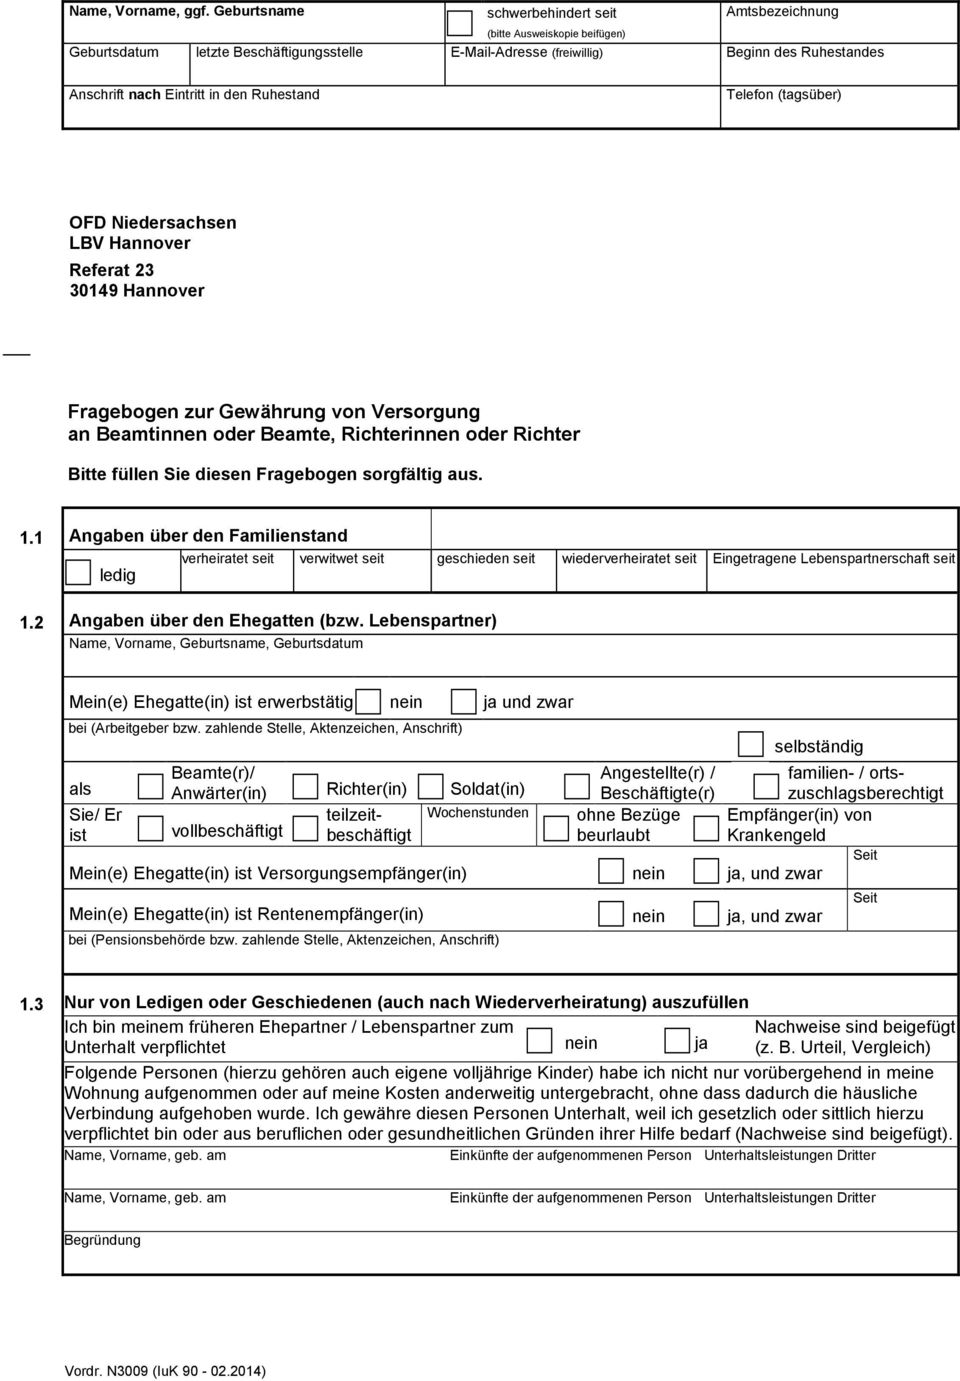 den Ruhestand Telefon (tagsüber) OFD Niedersachsen LBV Hannover Referat 23 30149 Hannover Fragebogen zur Gewährung von Versorgung an Beamtinnen oder Beamte, Richterinnen oder Richter Bitte füllen Sie